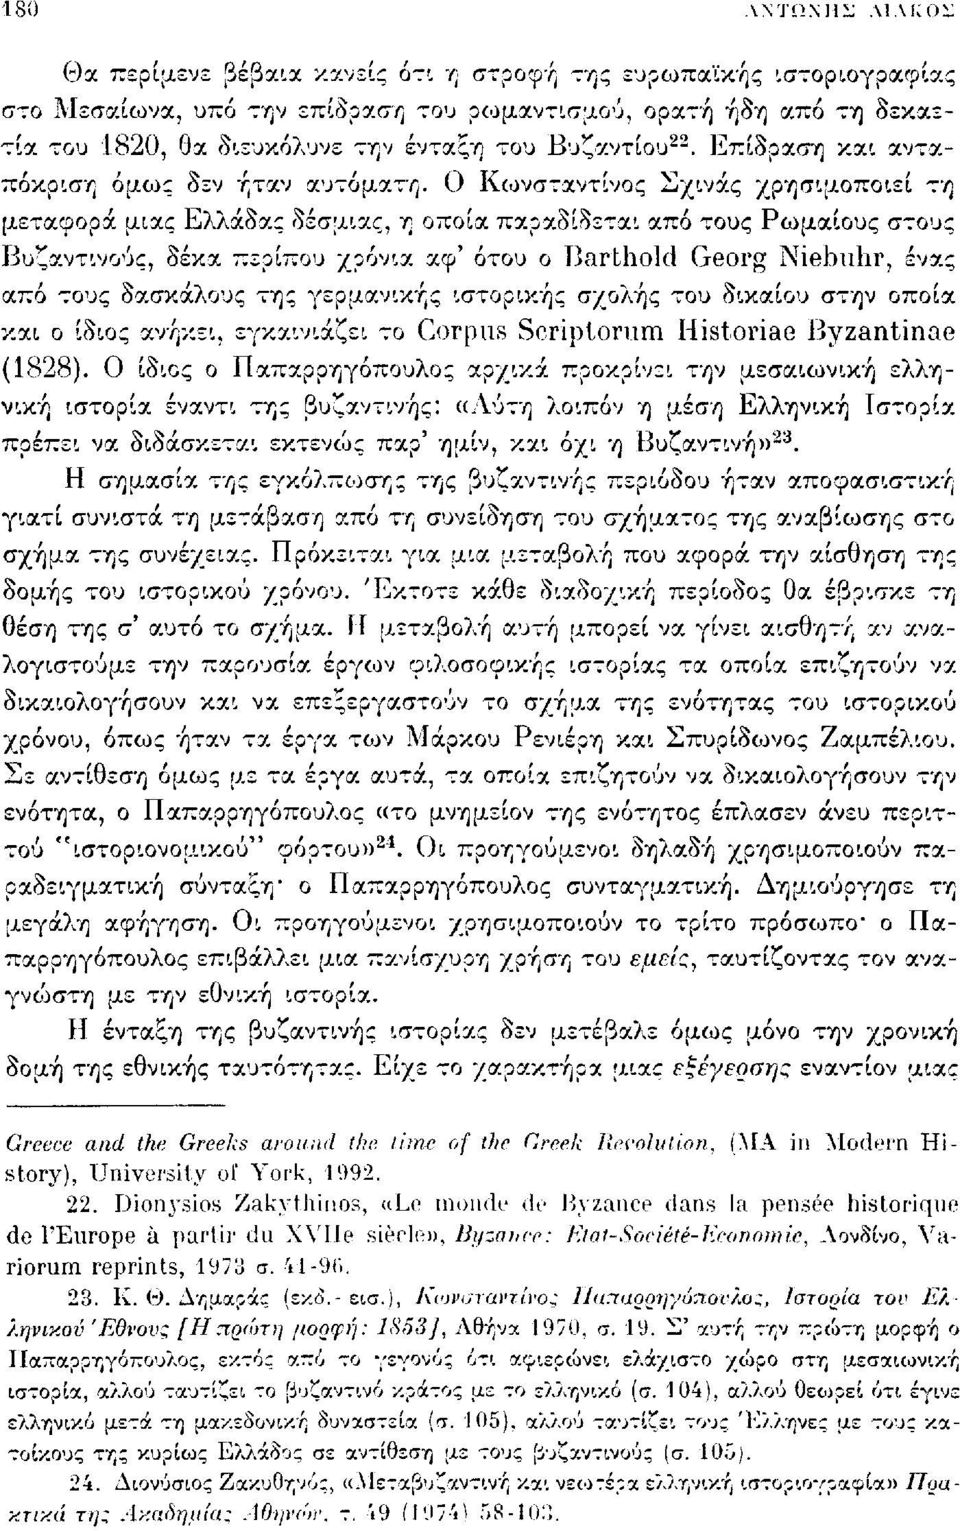 Ο Κωνσταντίνος Σχινάς χρησιμοποιεί τη μεταφορά μιας Ελλάδας δέσμιας, η οποία παραδίδεται από τους Ρωμαίους στους Βυζαντινούς, δέκα περίπου χρόνια αφ' ότου ο Barthold Georg Niebiihr, ένας από τους